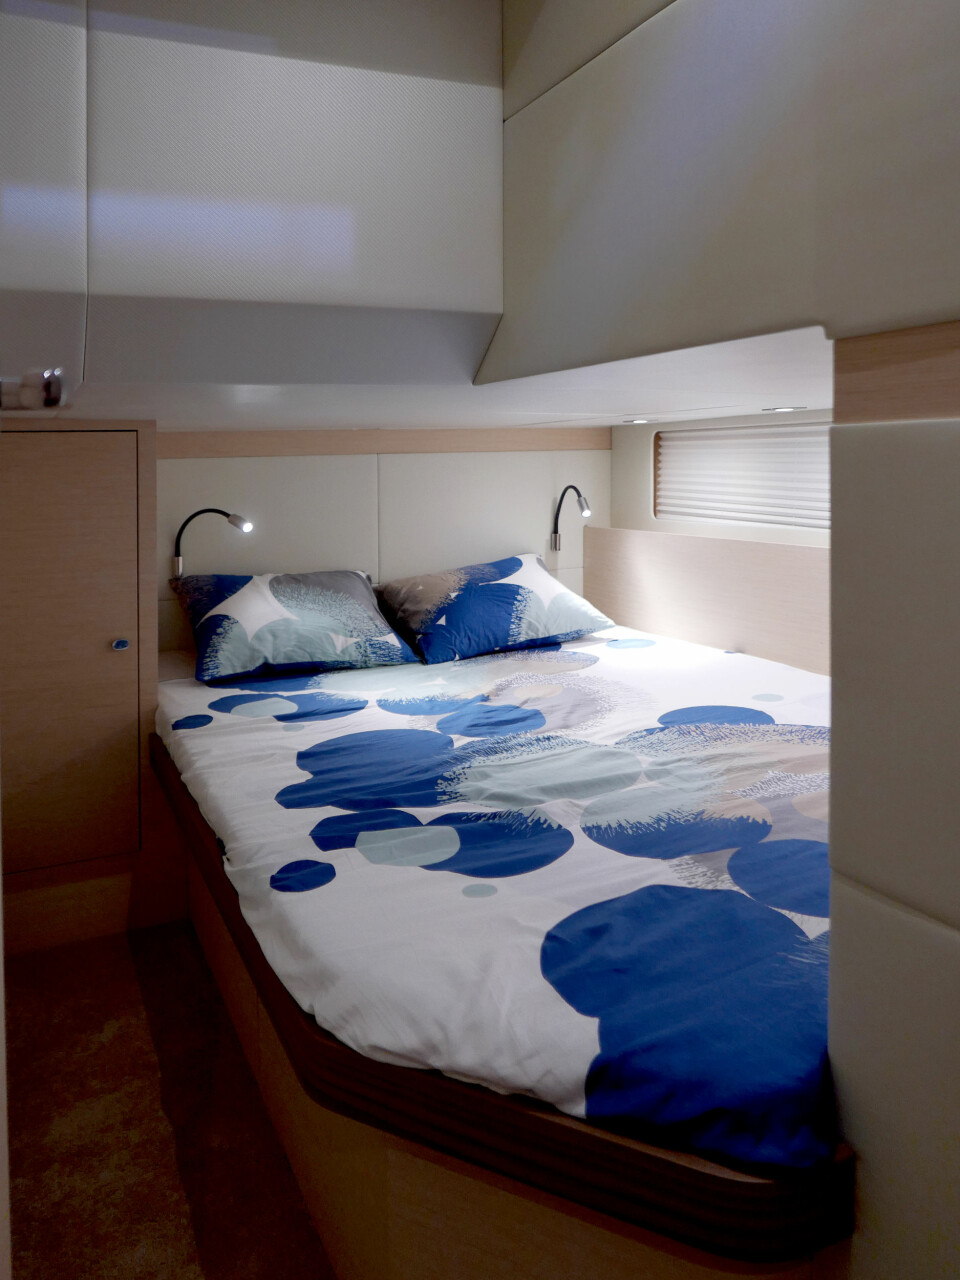 RAUSE LUGARER: Overnattingskomforten er som på en større båt. Den viste versjonen av Seafaring 44 hadde tre doble lugarer og to baderom.